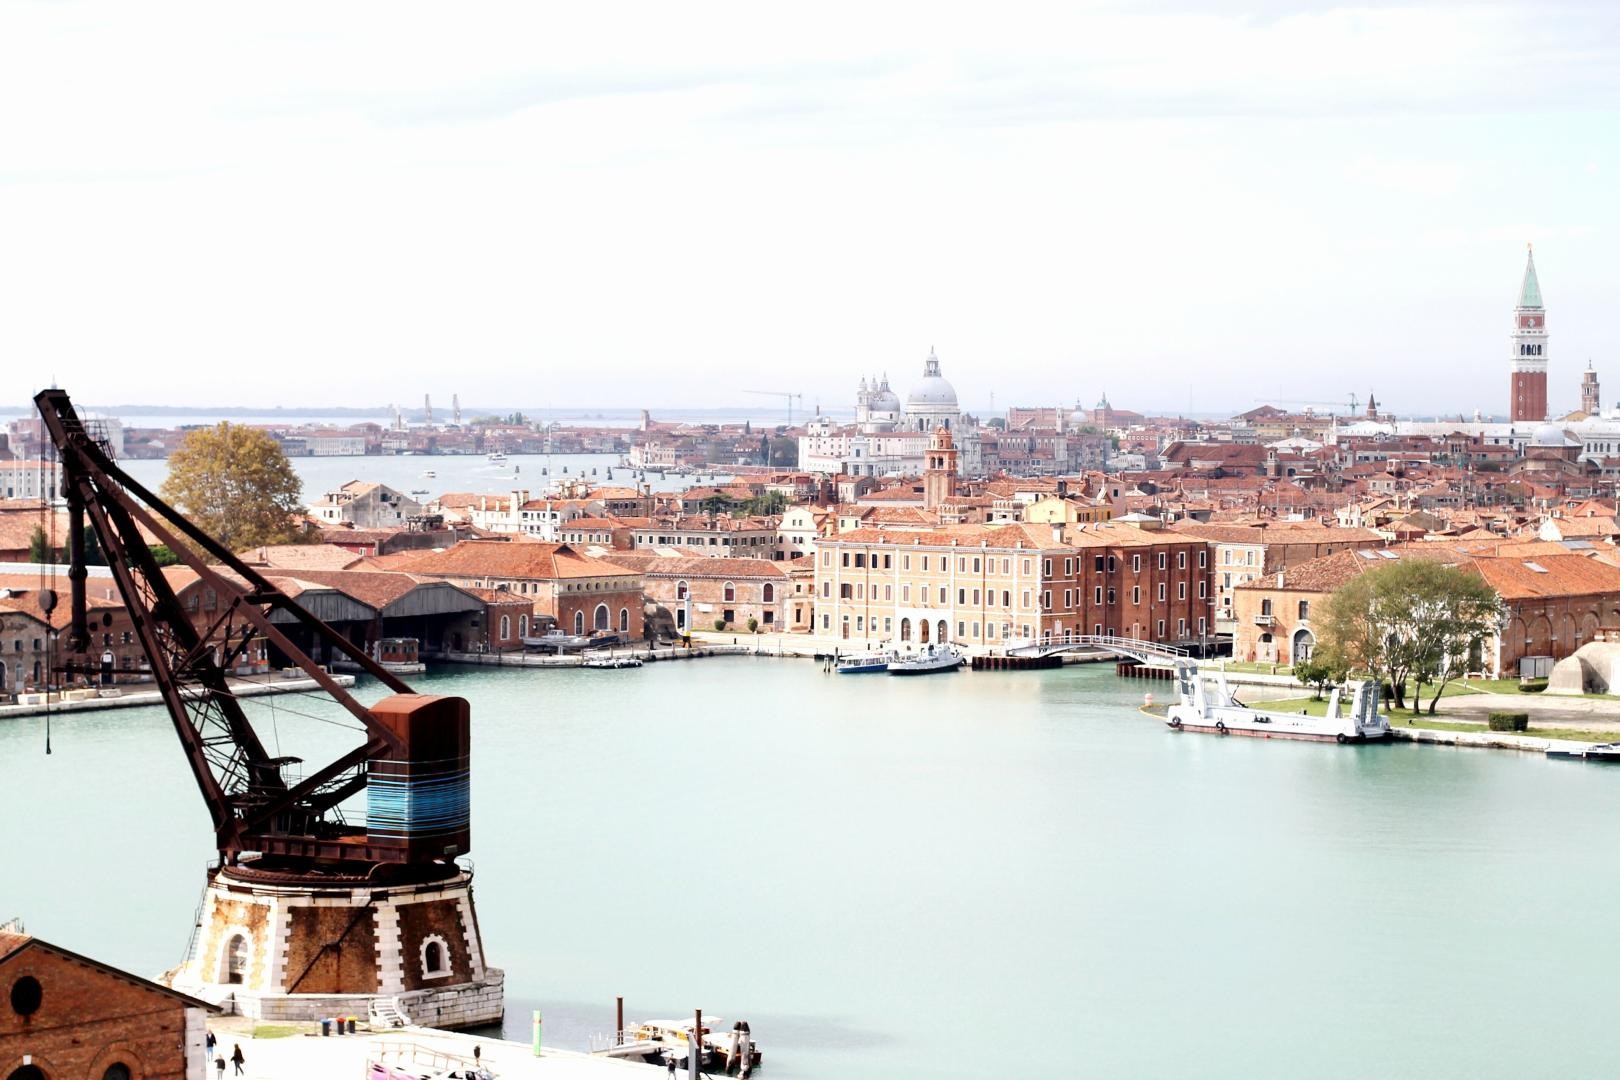 Dal 18 al 23 giugno prossimo arte e tecnologia nautica s’incontrano a Venezia 